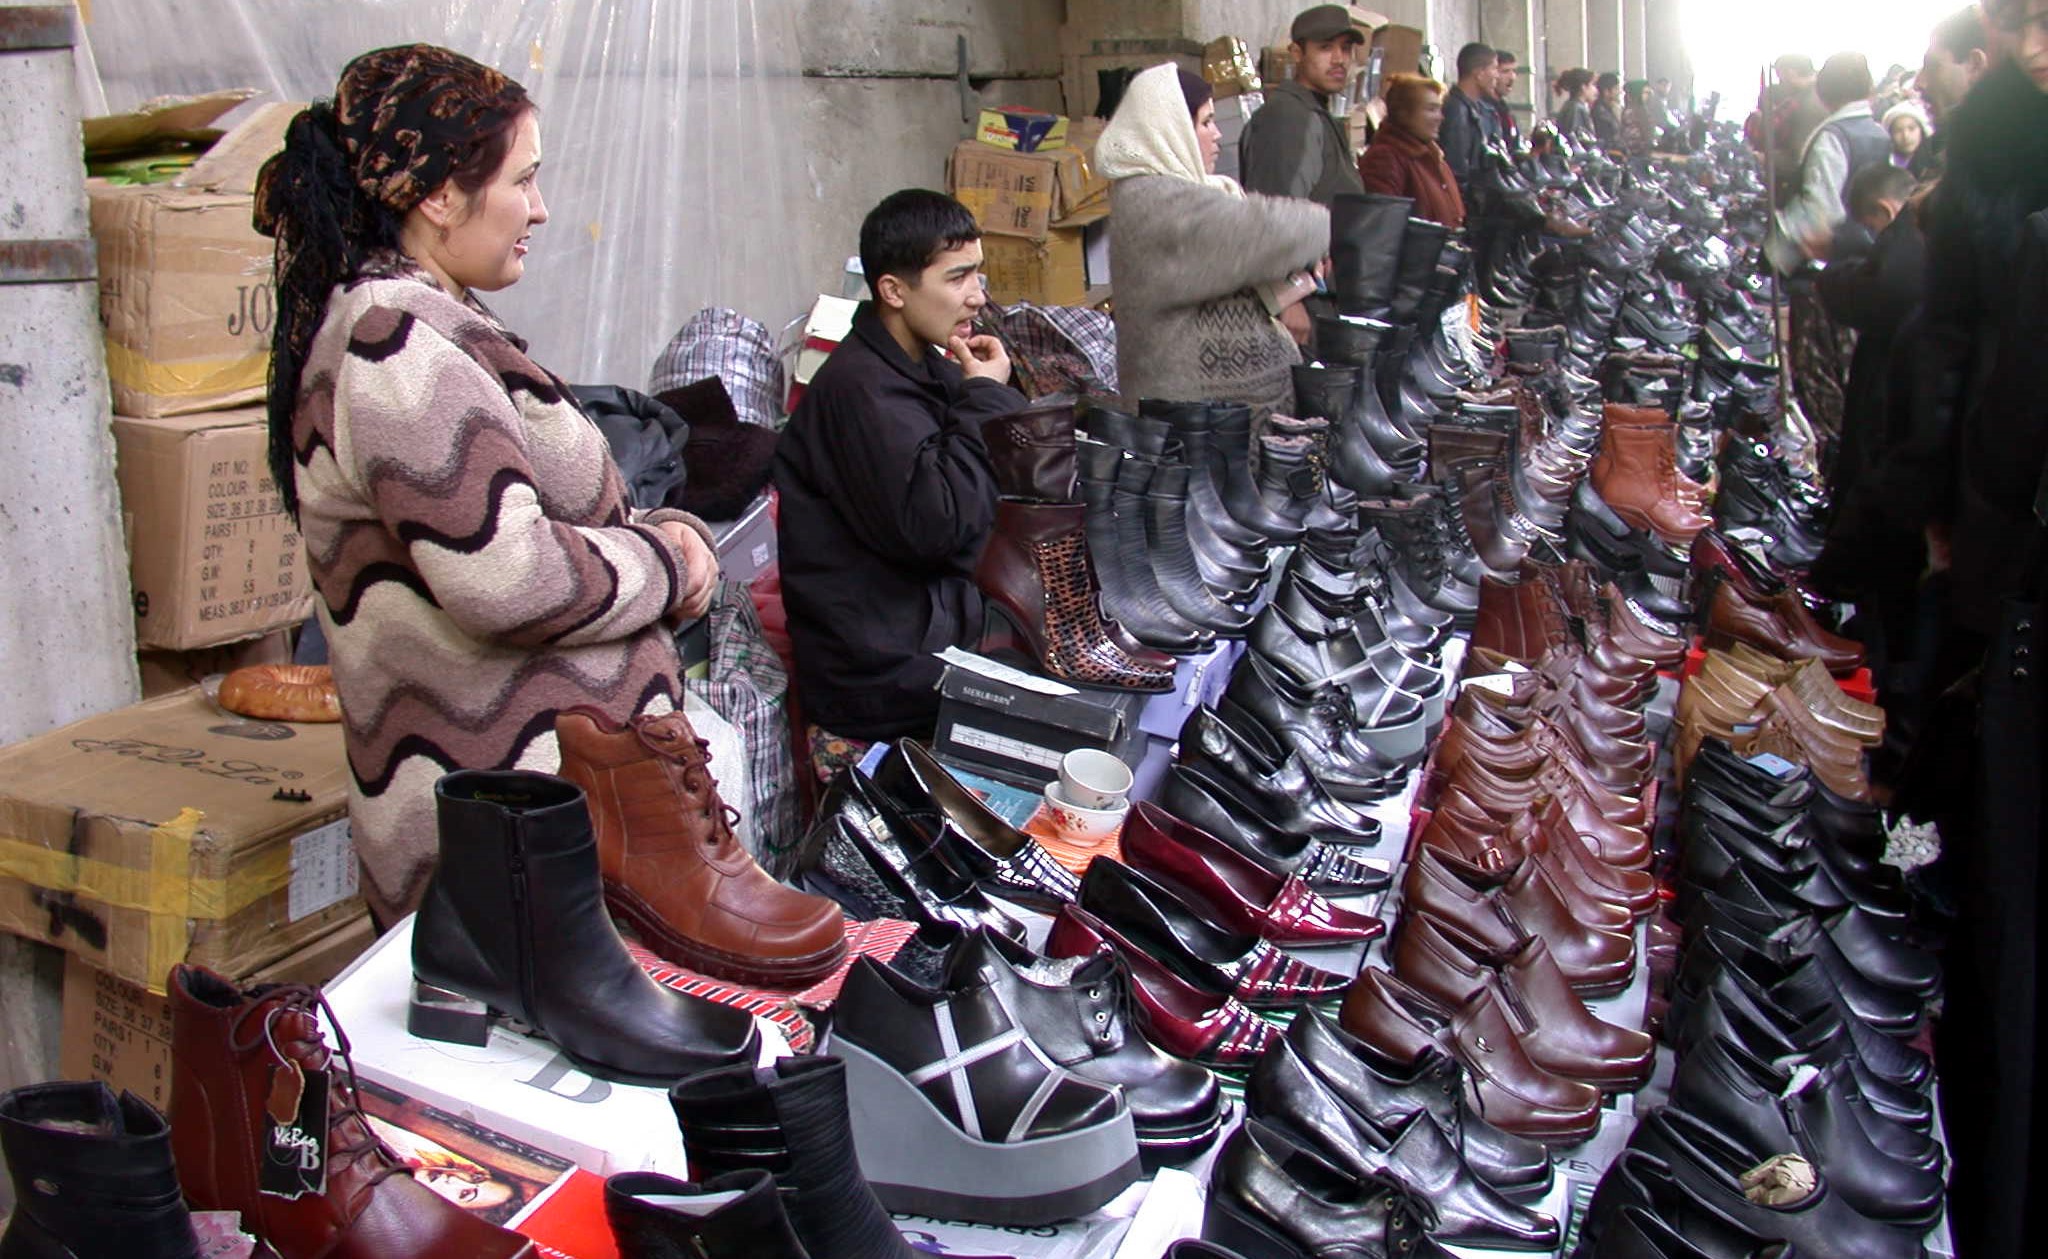 Где можно купить в душанбе. Таджикистан рынок Корвон. Вещевой рынок Душанбе Корвон. Базар Корвон в Душанбе. Корвон рынок в Душанбе обувь.